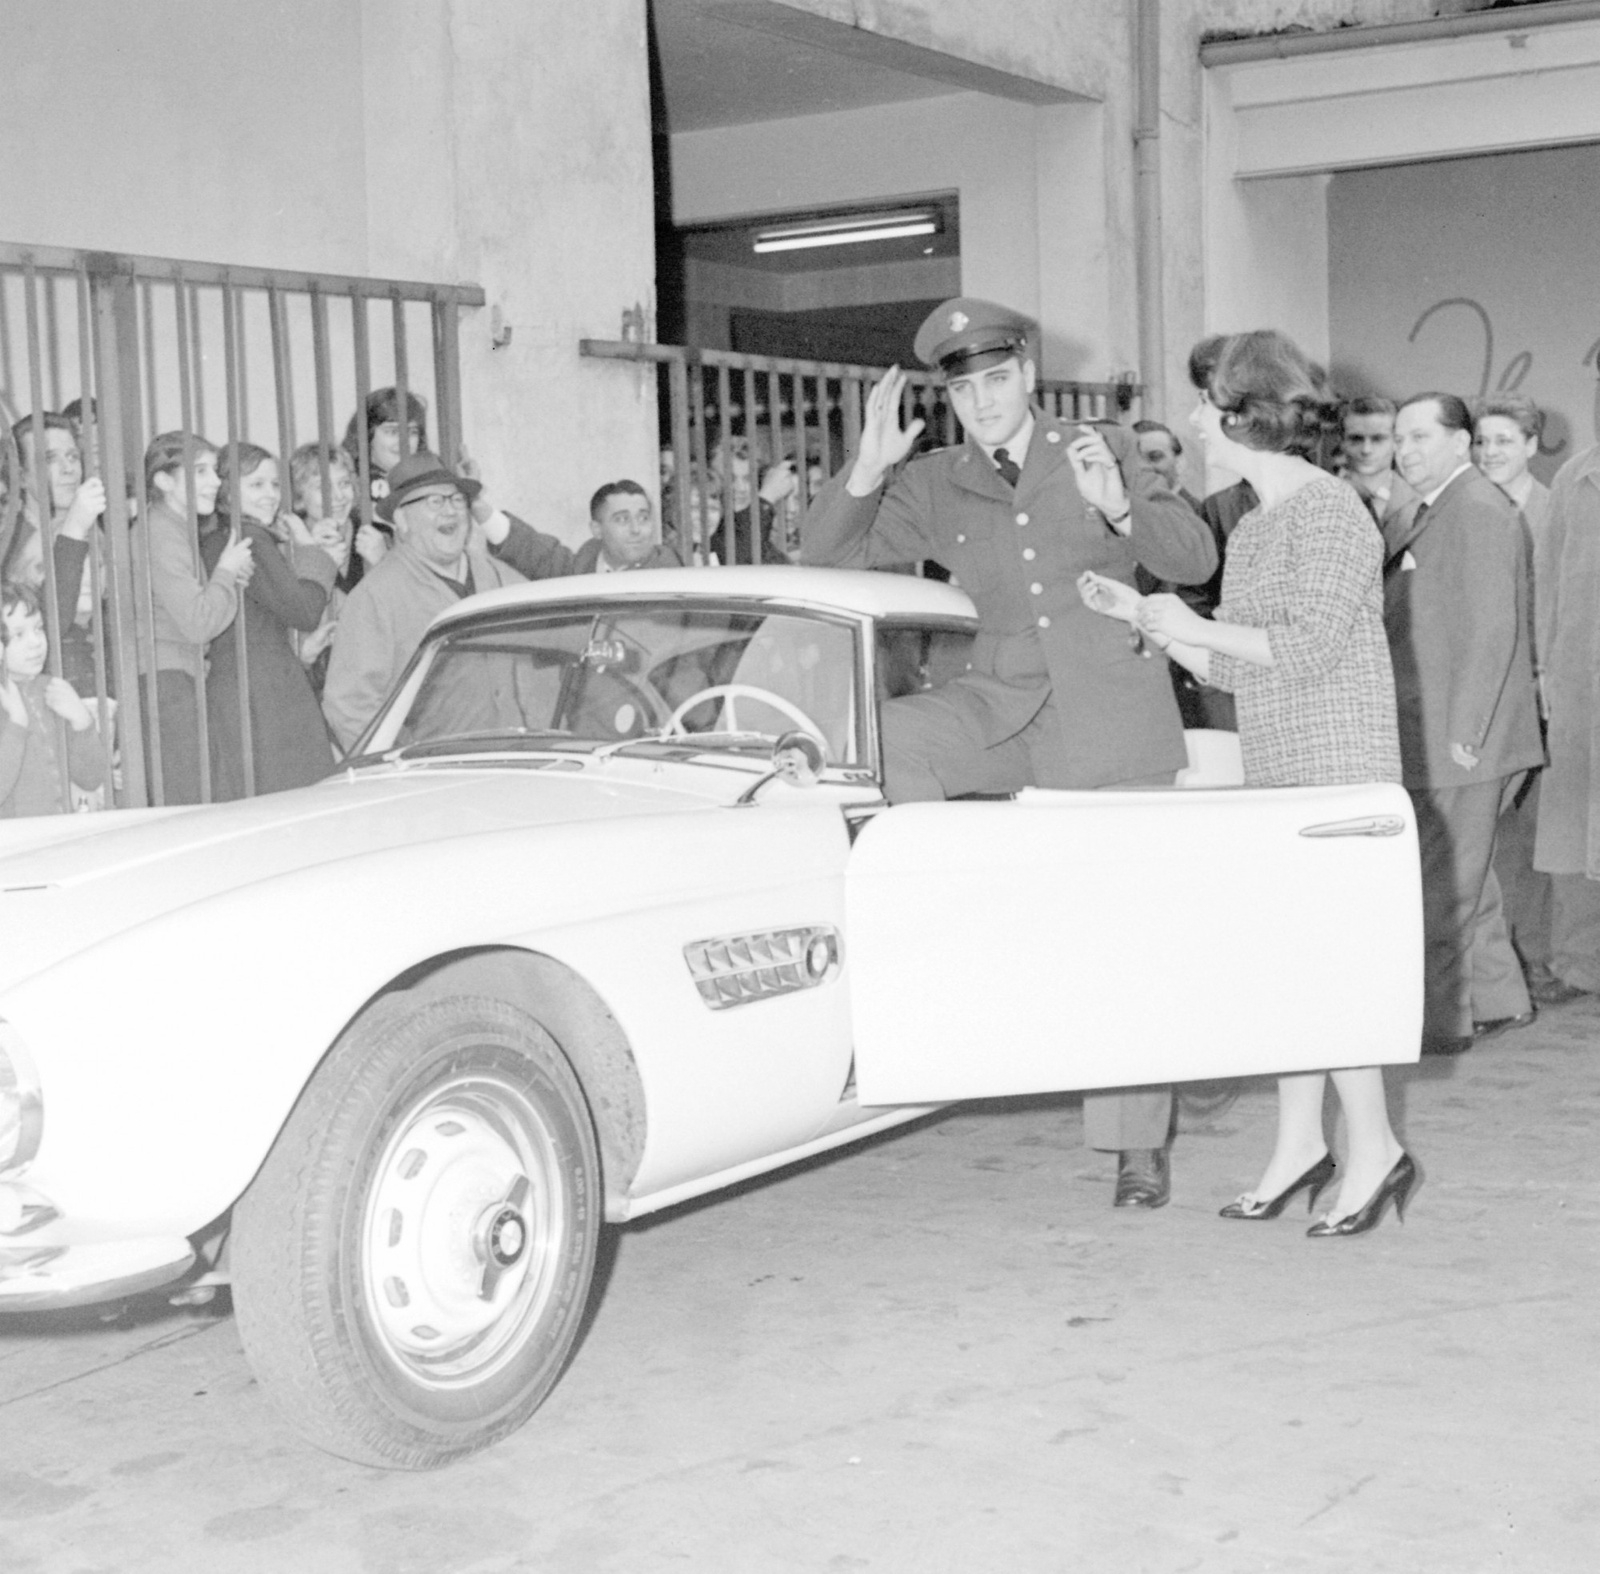 Elvis Presley var den kanske mest kände 507-ägaren när modellen var ny. Osäkert dock om Elvis ökade eller minskade den posörstatus som 507 drabbades av, den ansågs aldrig lika häftig som Mercedes 300 SL i coupé- och roadsterutförande.
Foto: AP/TT